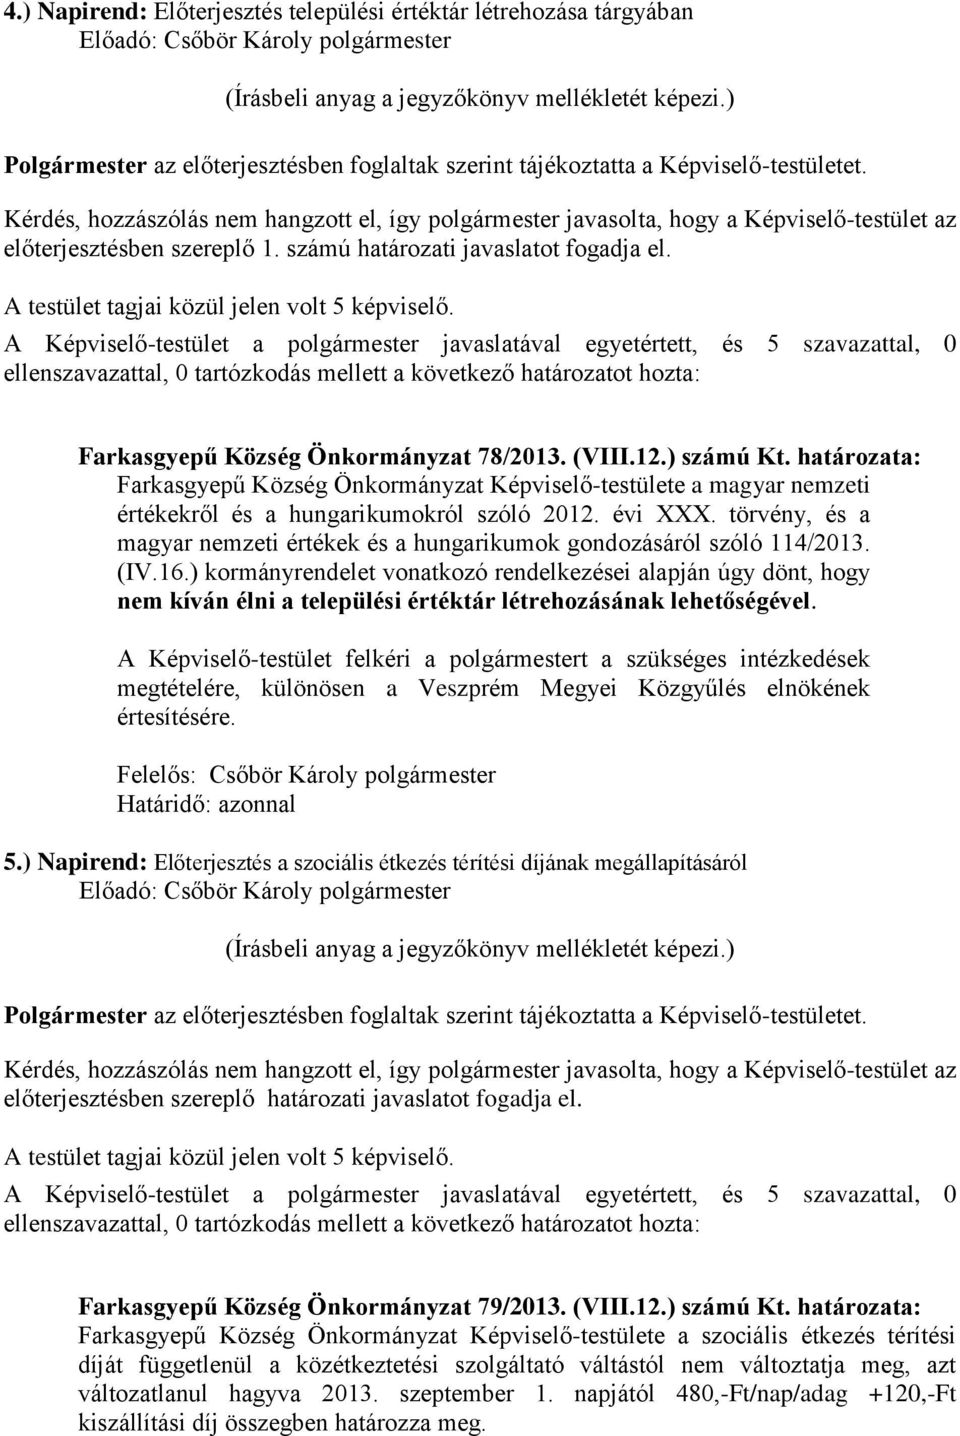 törvény, és a magyar nemzeti értékek és a hungarikumok gondozásáról szóló 114/2013. (IV.16.